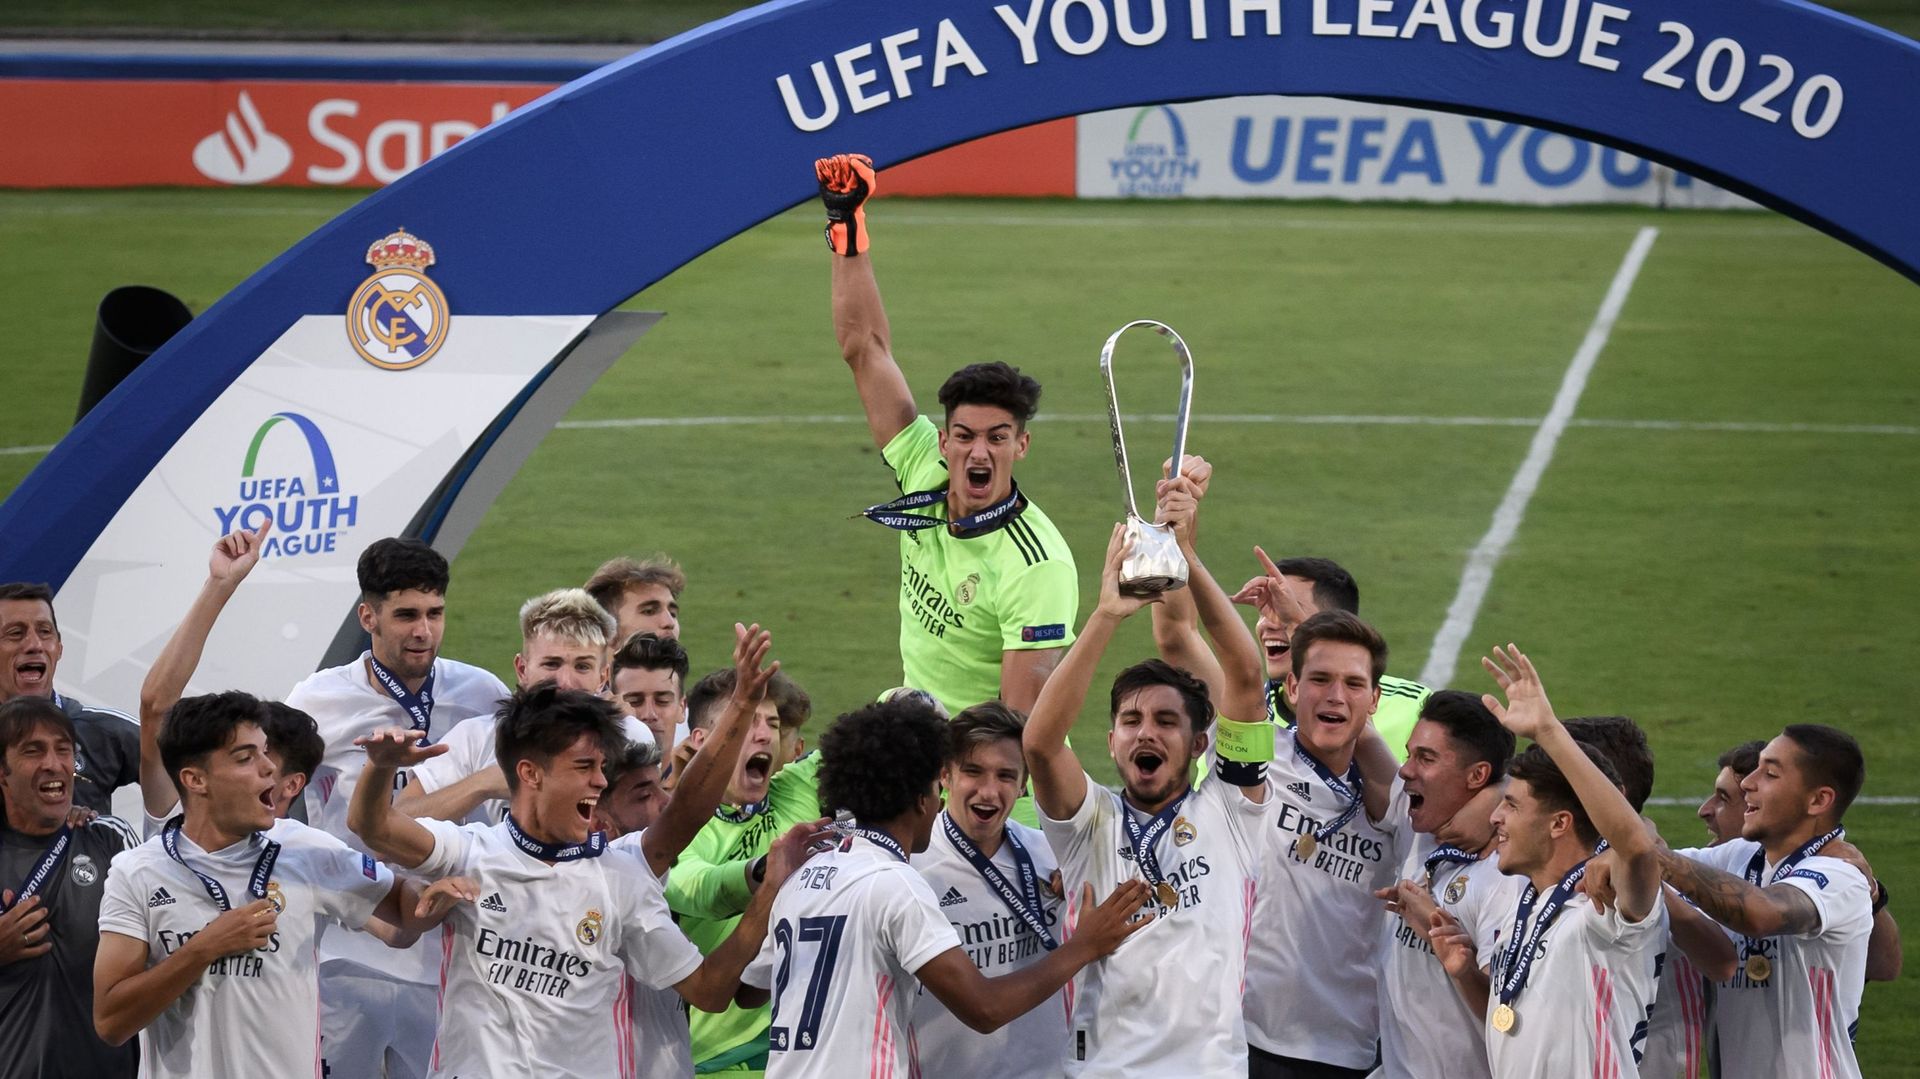 Youth League: Le Real Madrid sacré après avoir battu Benfica